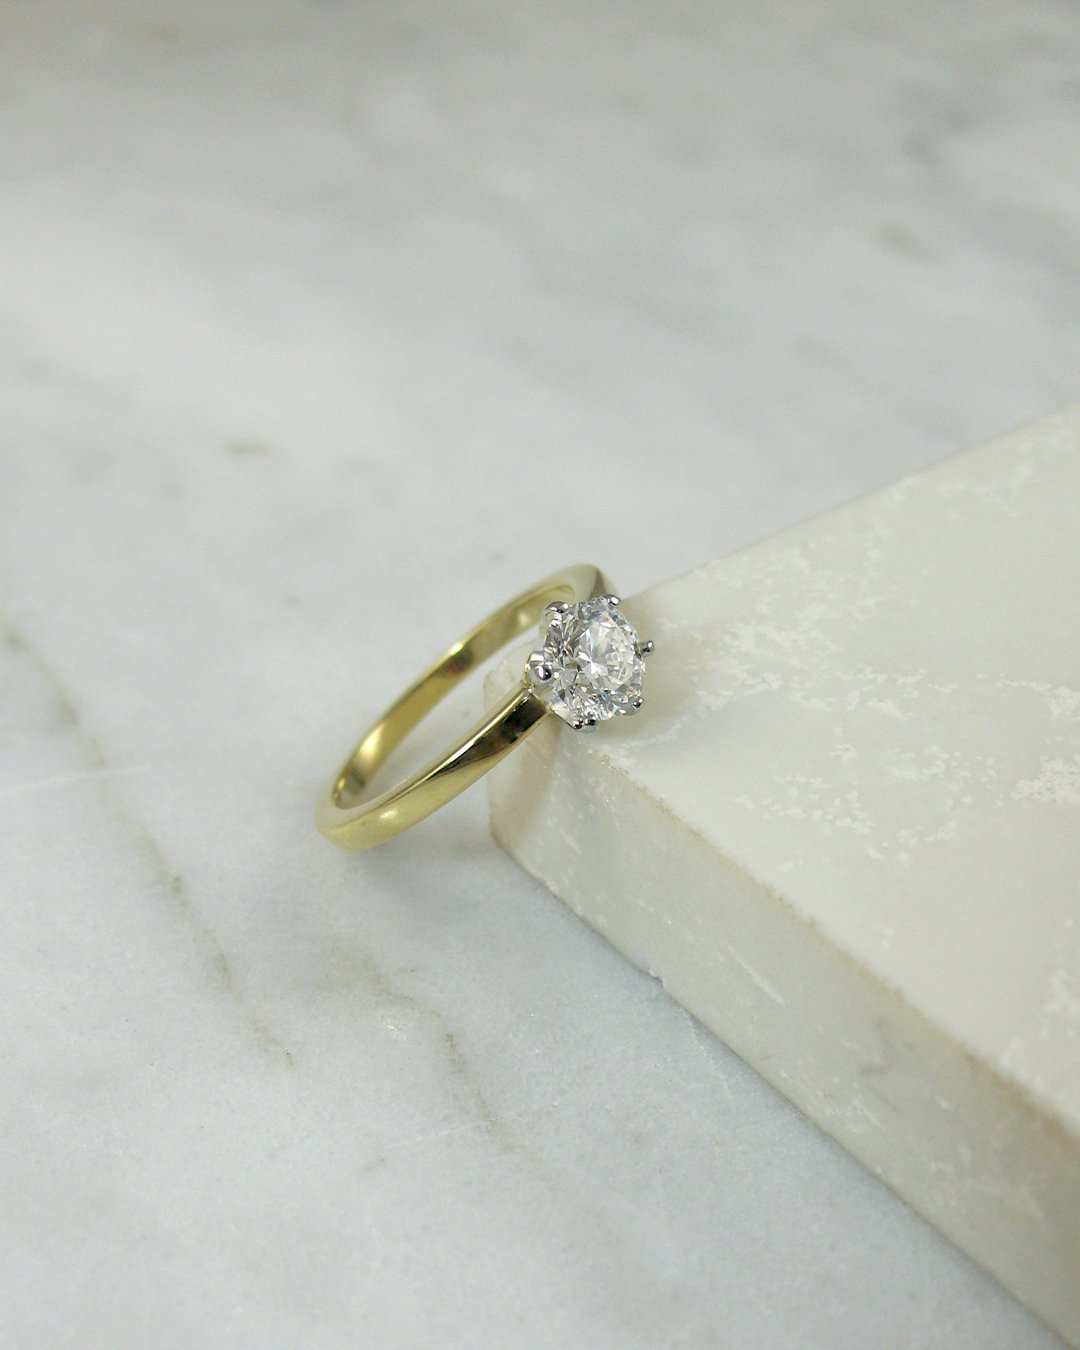 A mininalist bespoke diamond engagement ring